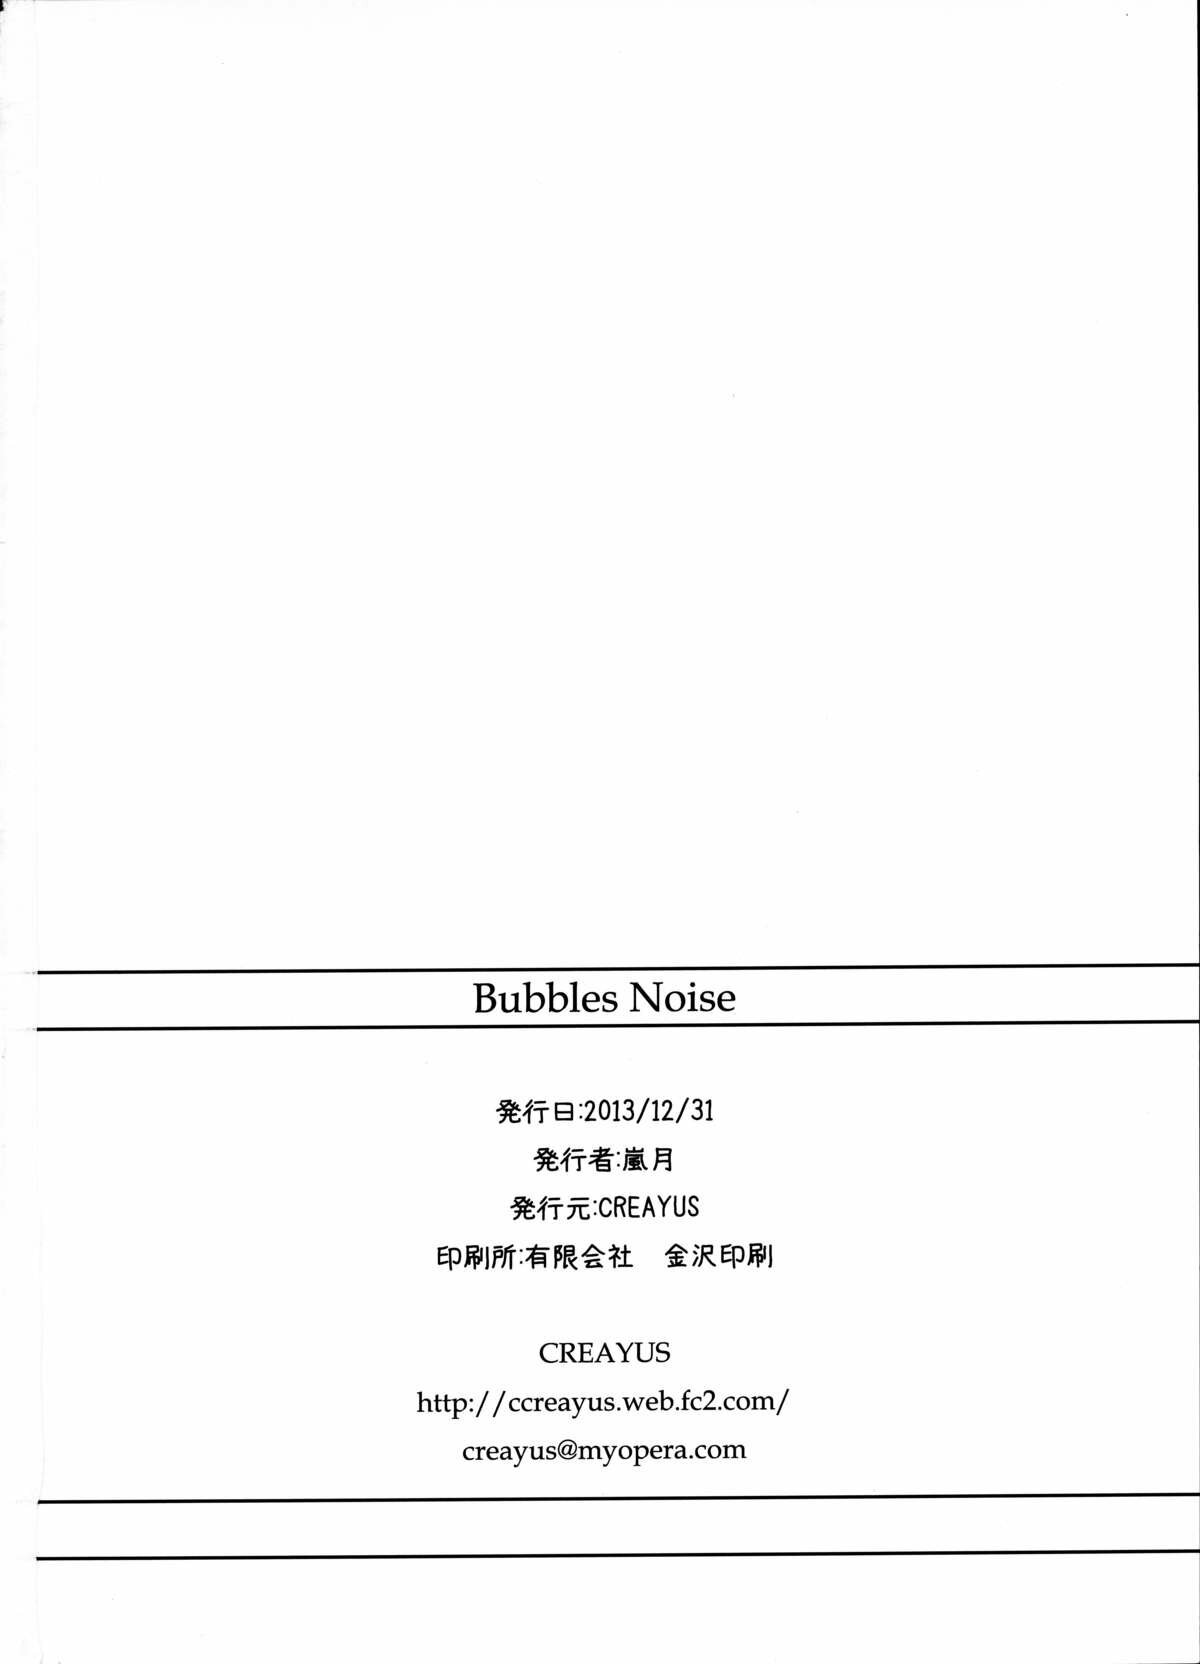 Bubbles Noise - 27